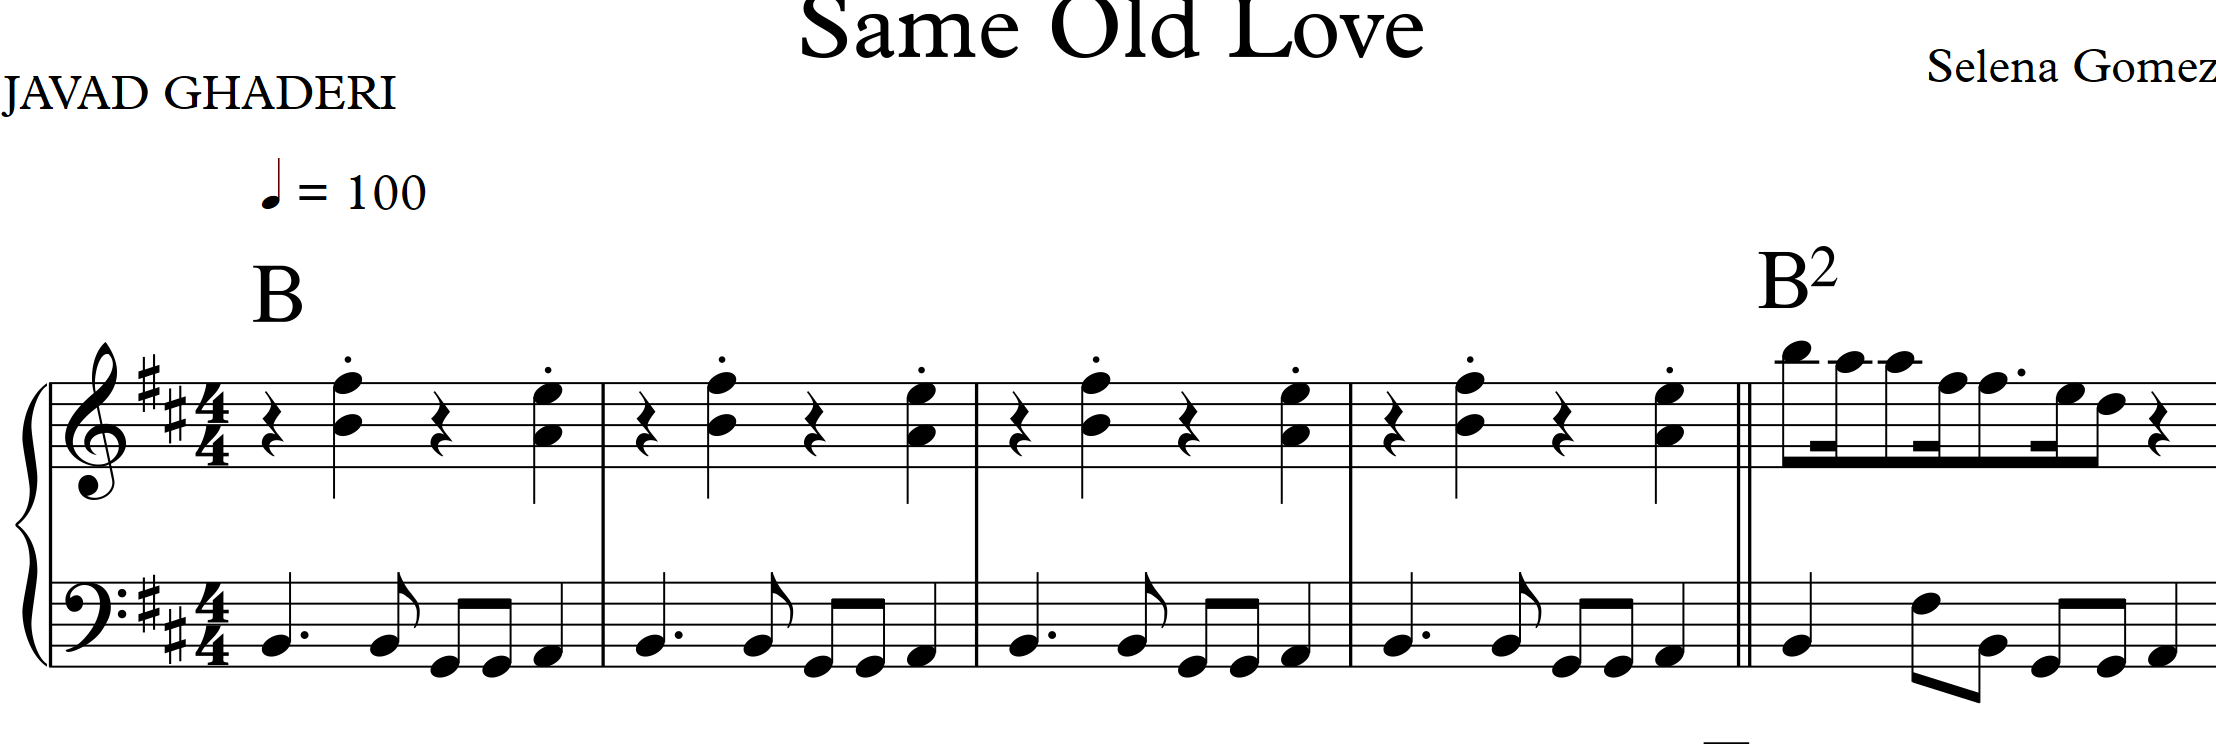 نت Same Old Love سلنا گومز برای پیانو